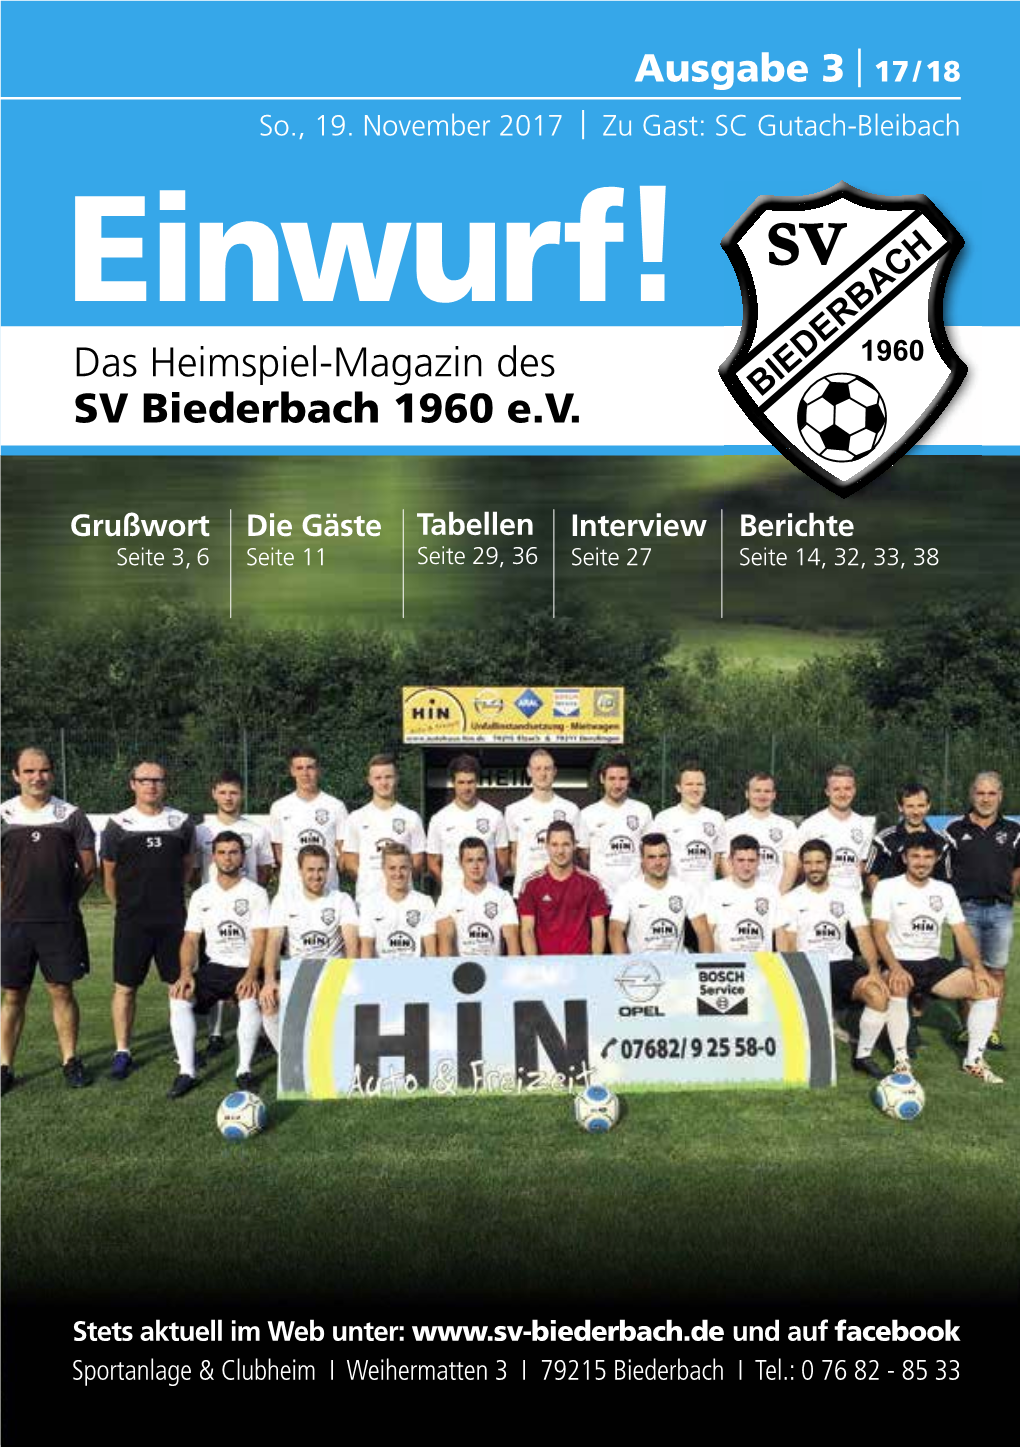 Einwurf! Das Heimspiel-Magazin Des SV Biederbach 1960 E.V